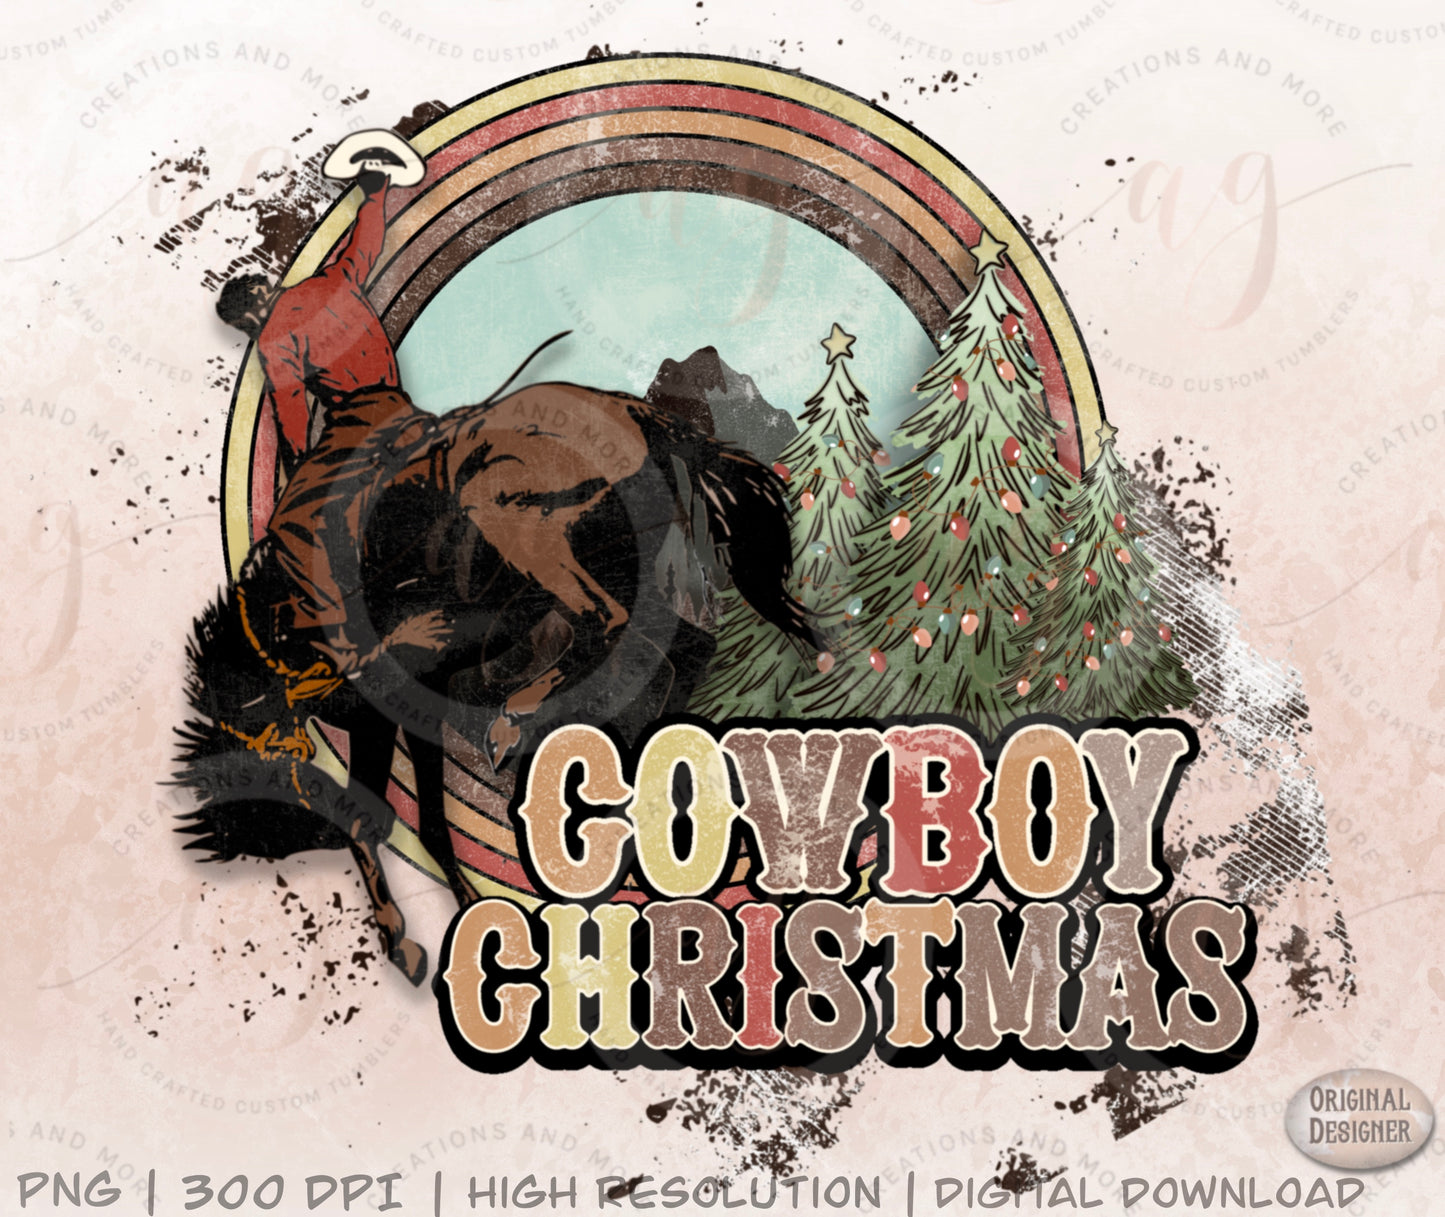 Western Cowboy Christmas